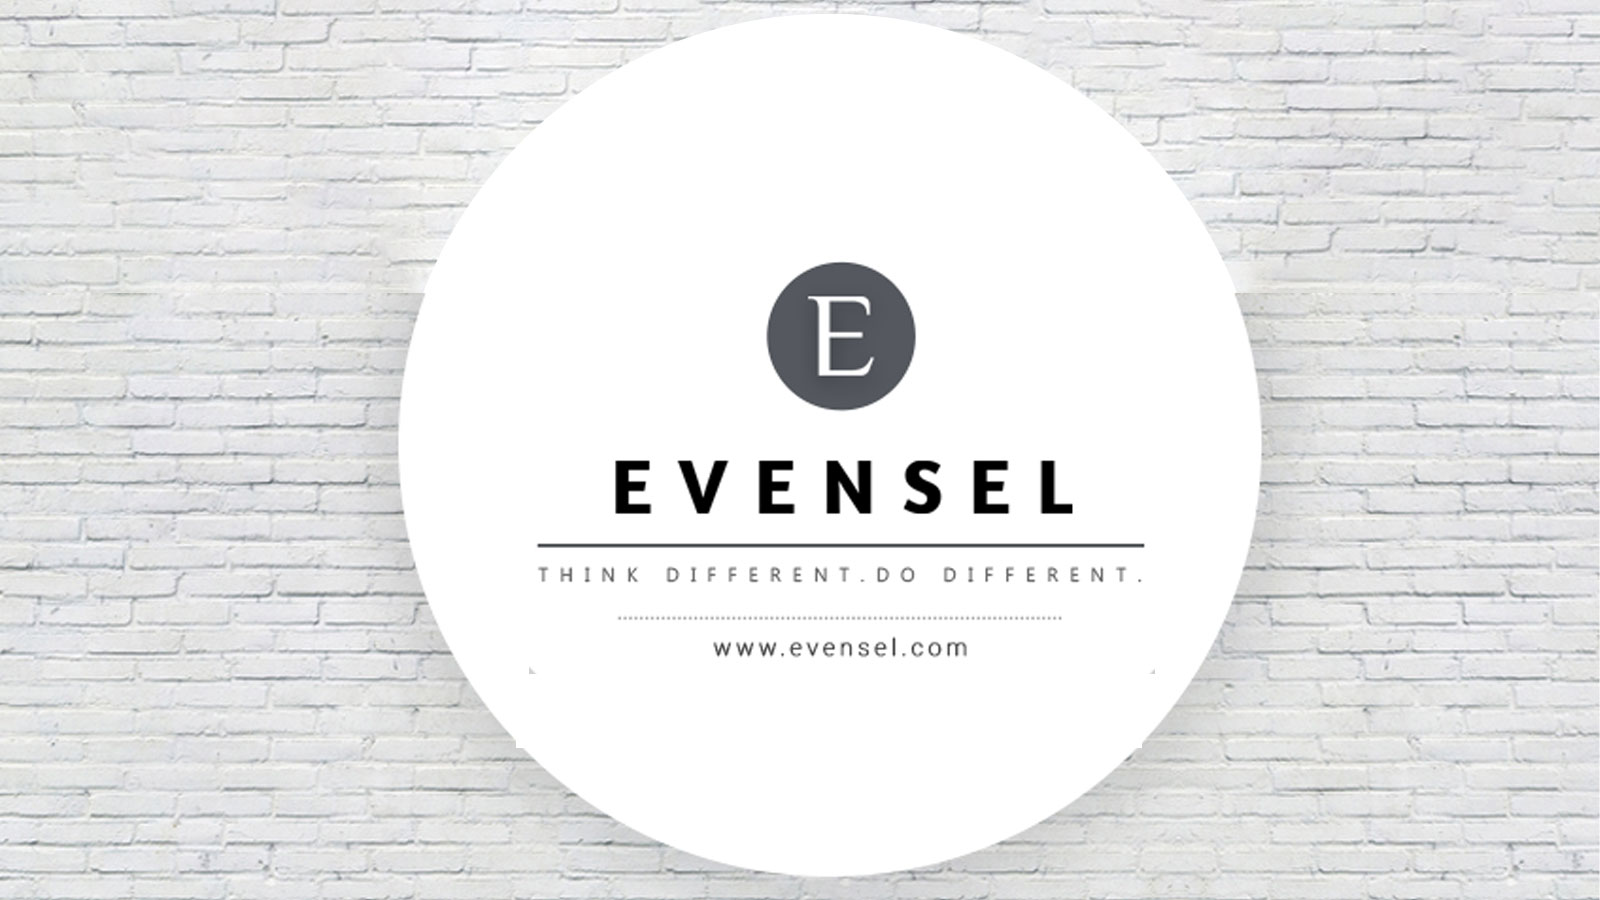 Evensel-IT Pvt Ltd